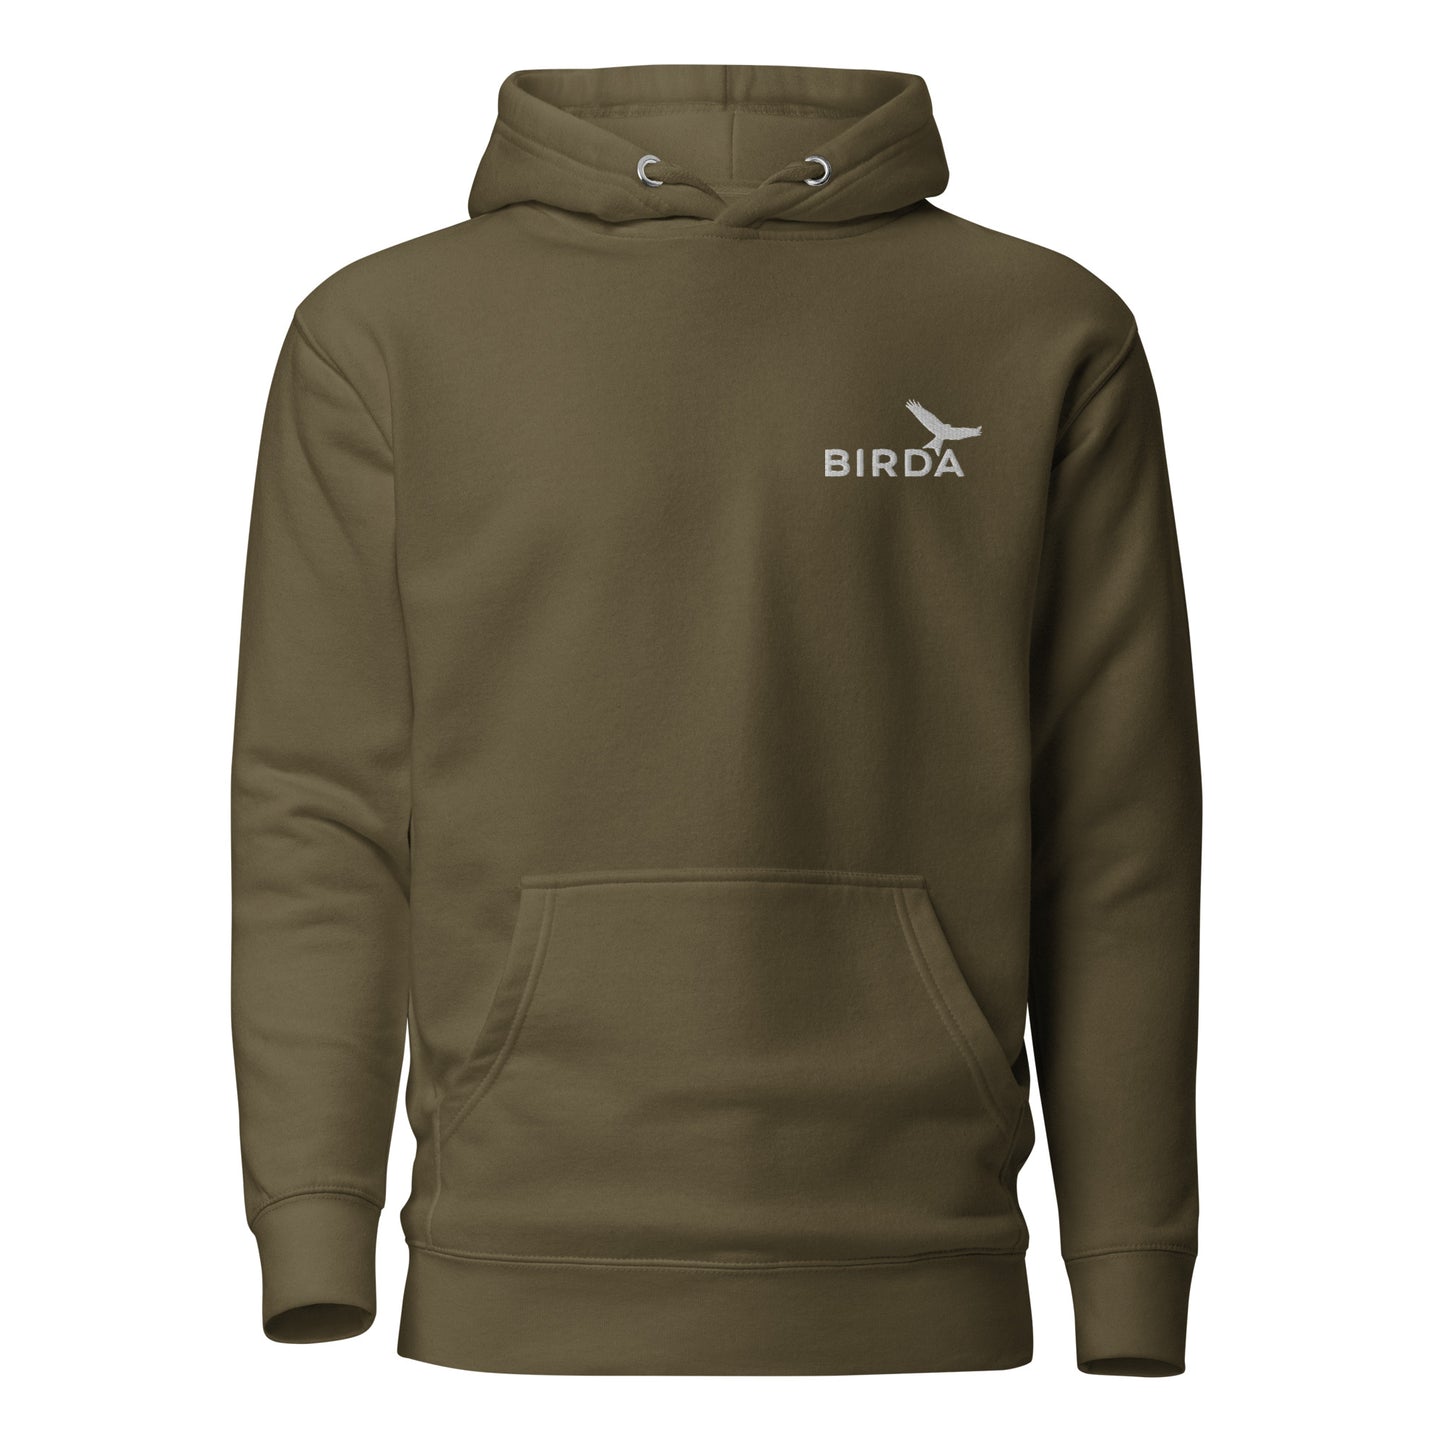 Birda bird premium hoodie - military green